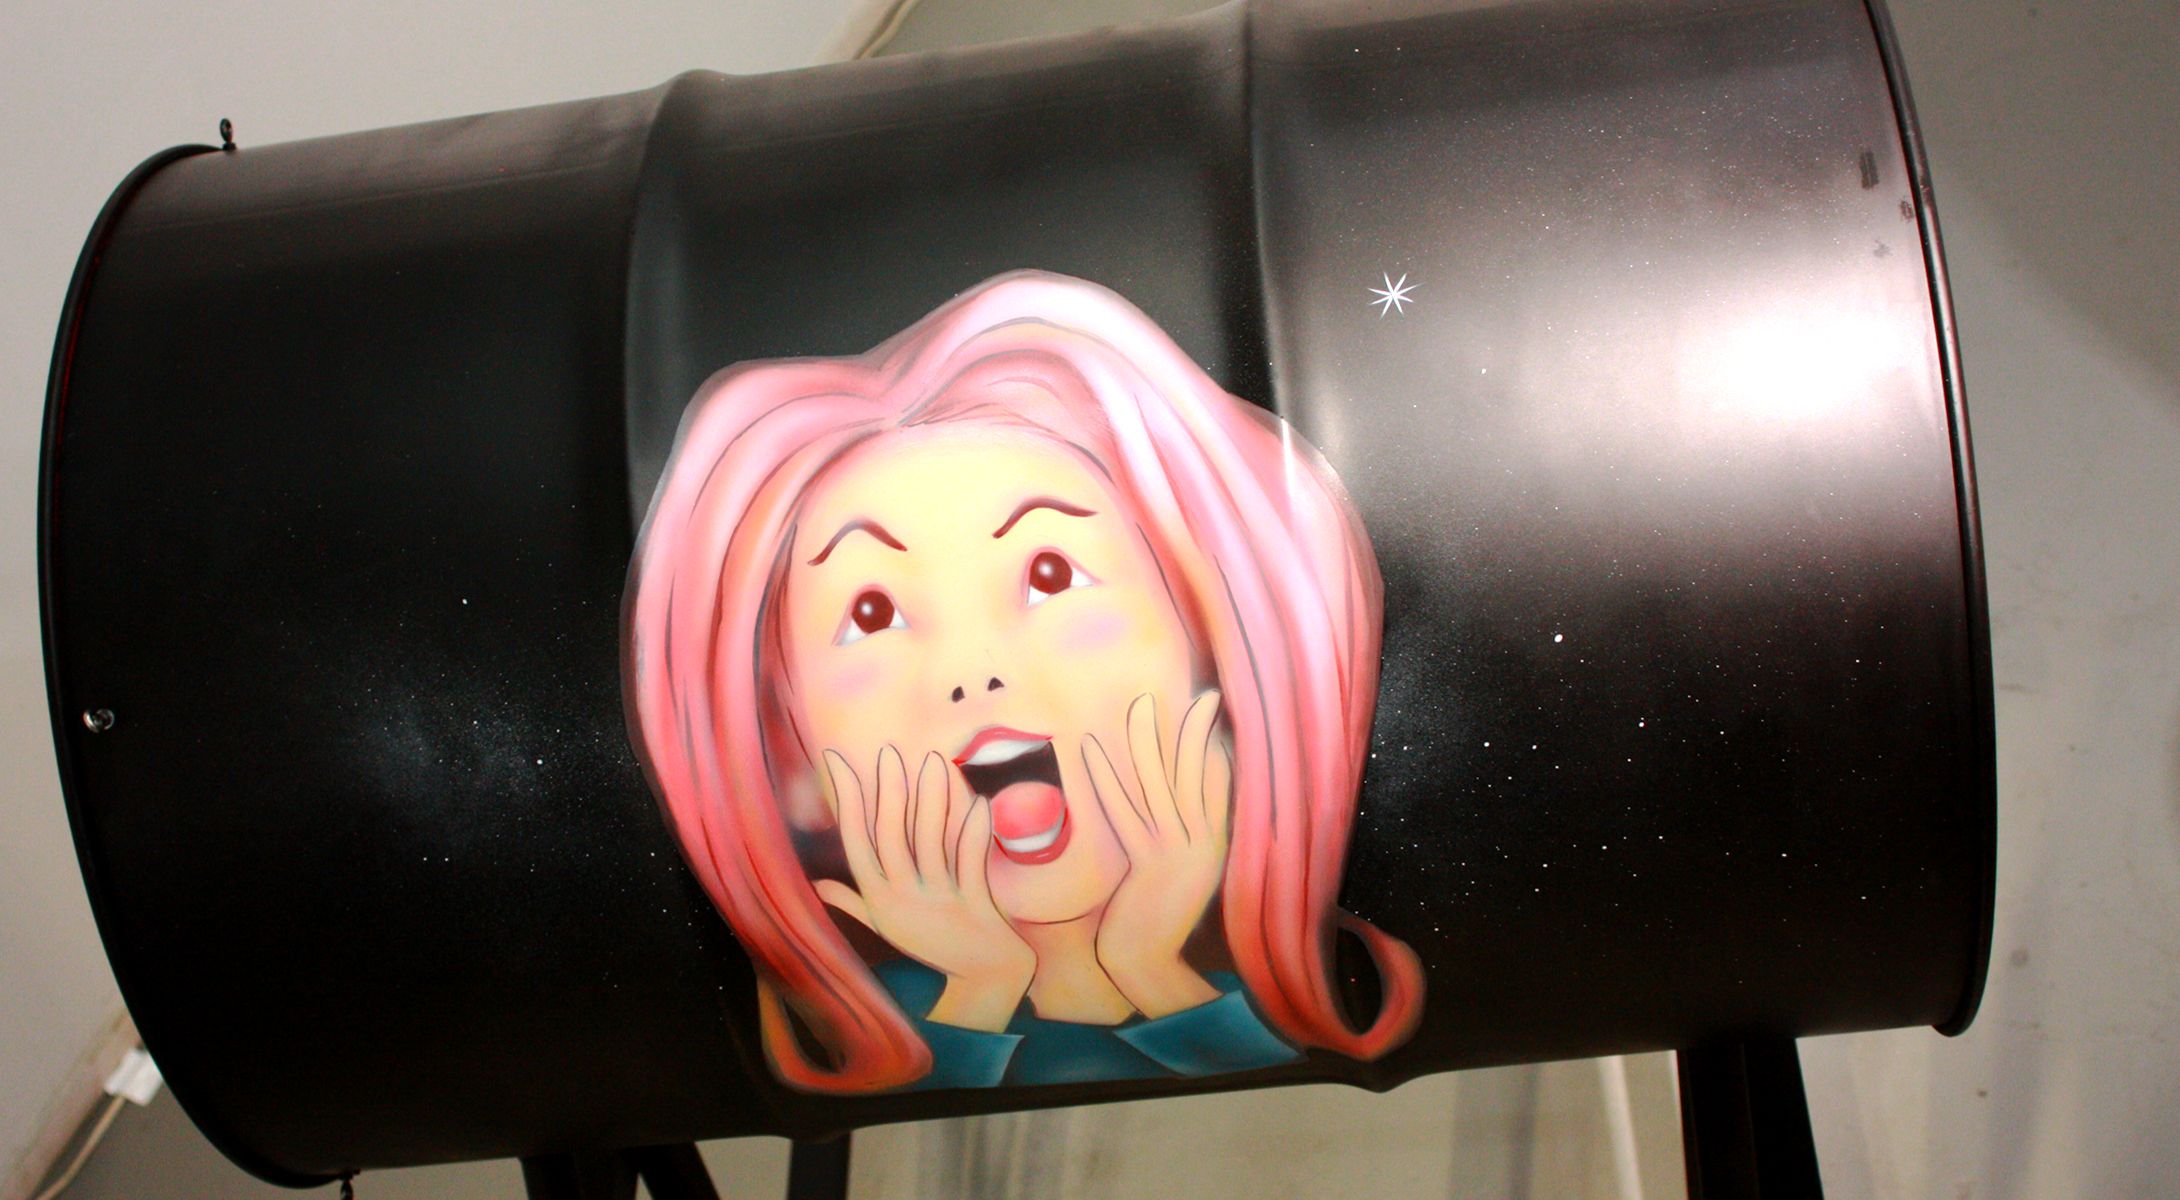 何かに驚いている女性の顔が描かれているドラム缶